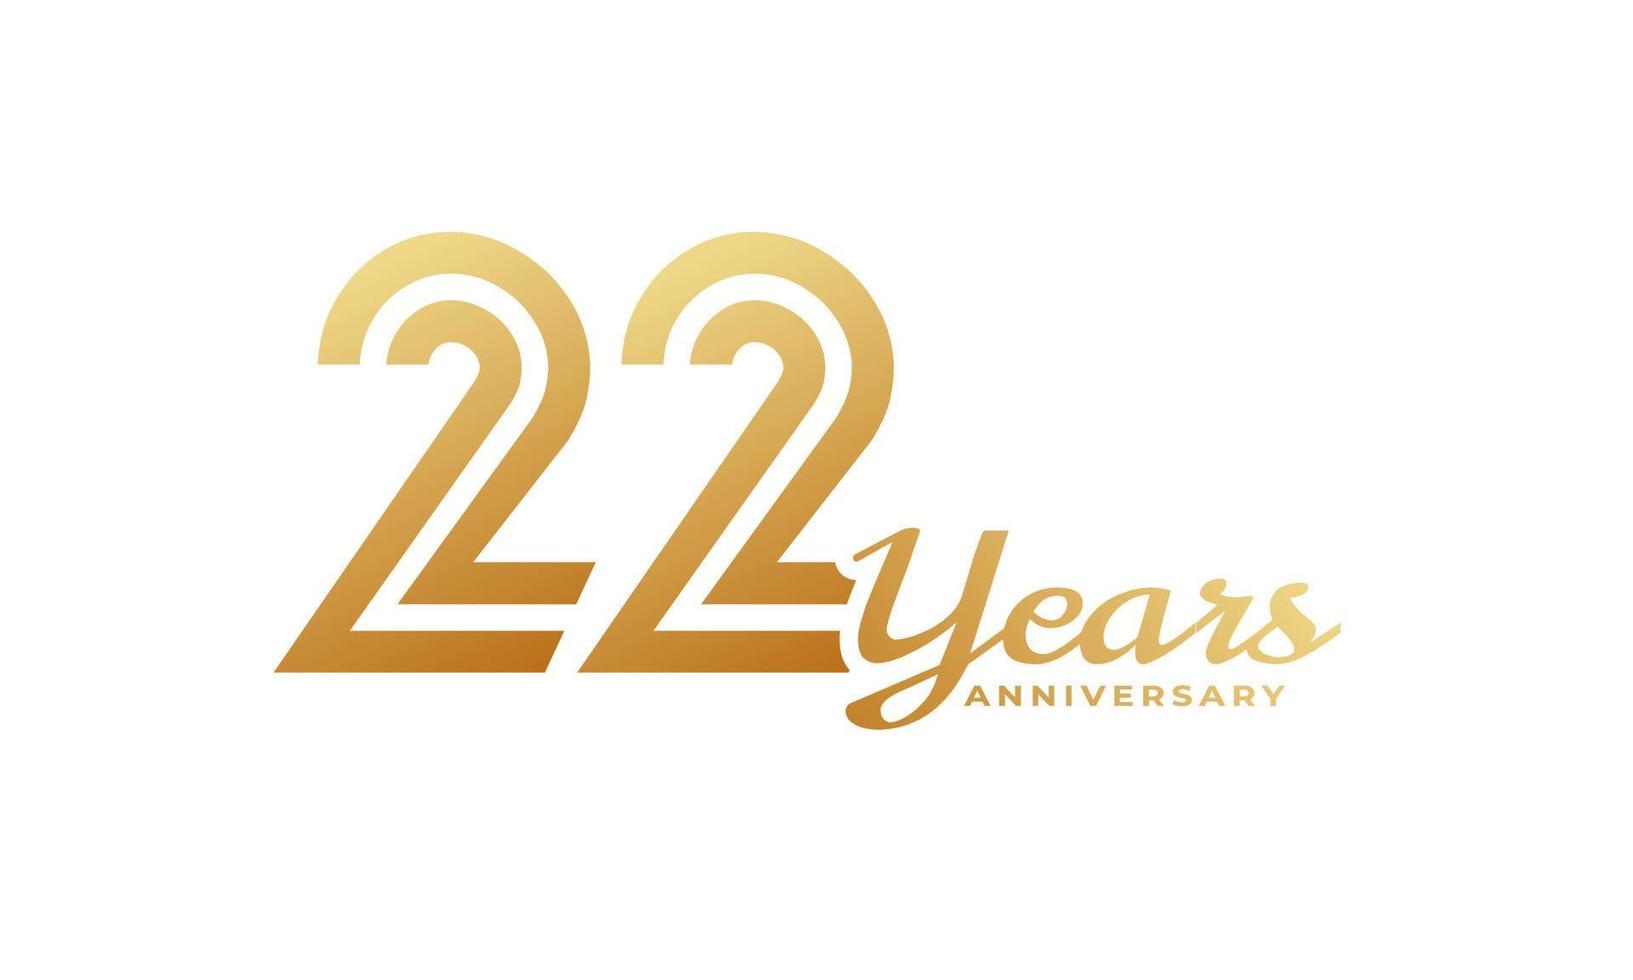 Celebração de aniversário de 22 anos com cor dourada de caligrafia para evento de celebração, casamento, cartão de felicitações e convite isolado no fundo branco vetor